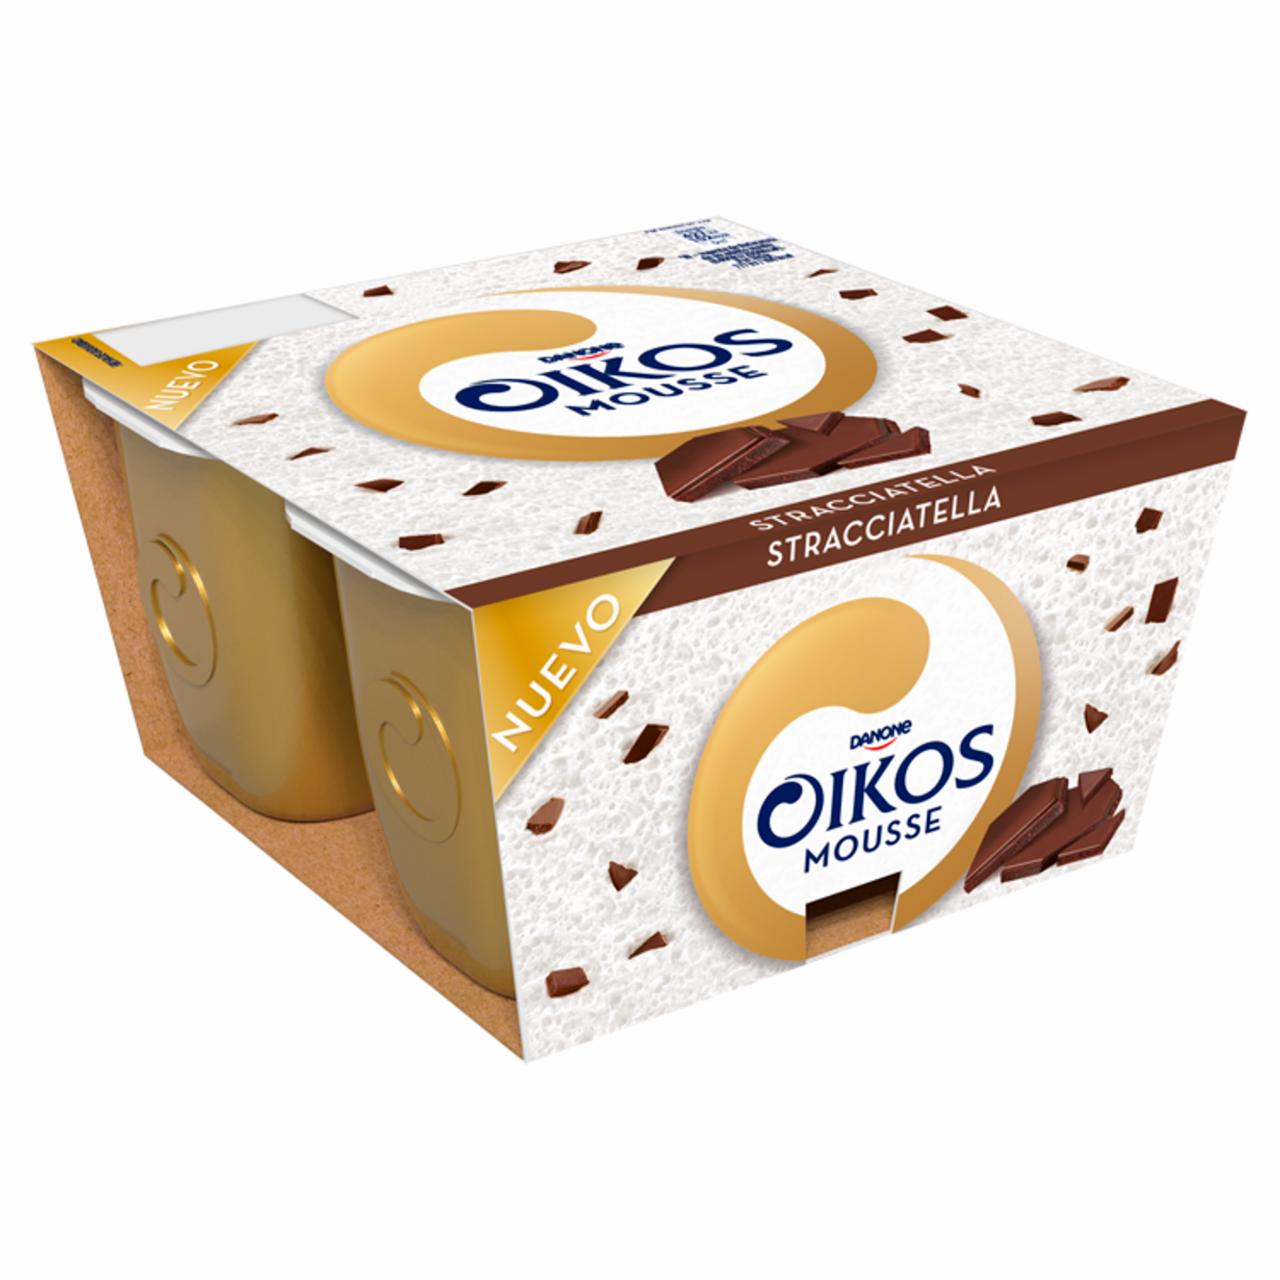 Képek - Oikos Mousse Stracciatella tejhab csokoládé darabokkal 4 x 55 g (220 g)